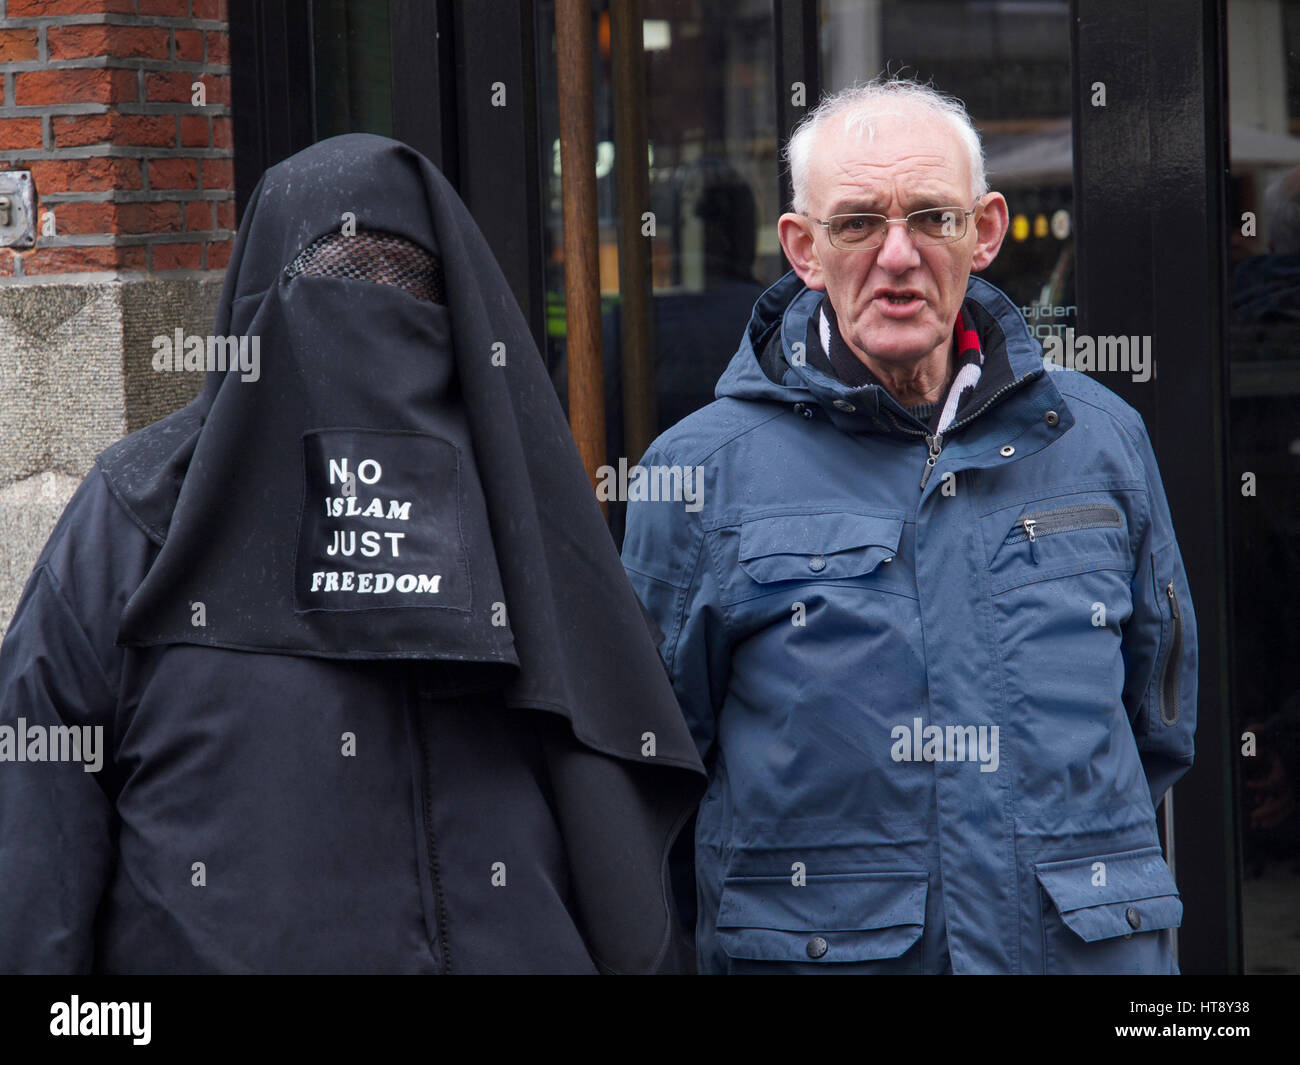 Pegida anti-islam protestant couple. Pas seulement la liberté de l'islam, le message sur la burqa se lit comme suit. Breda, Pays-Bas Banque D'Images